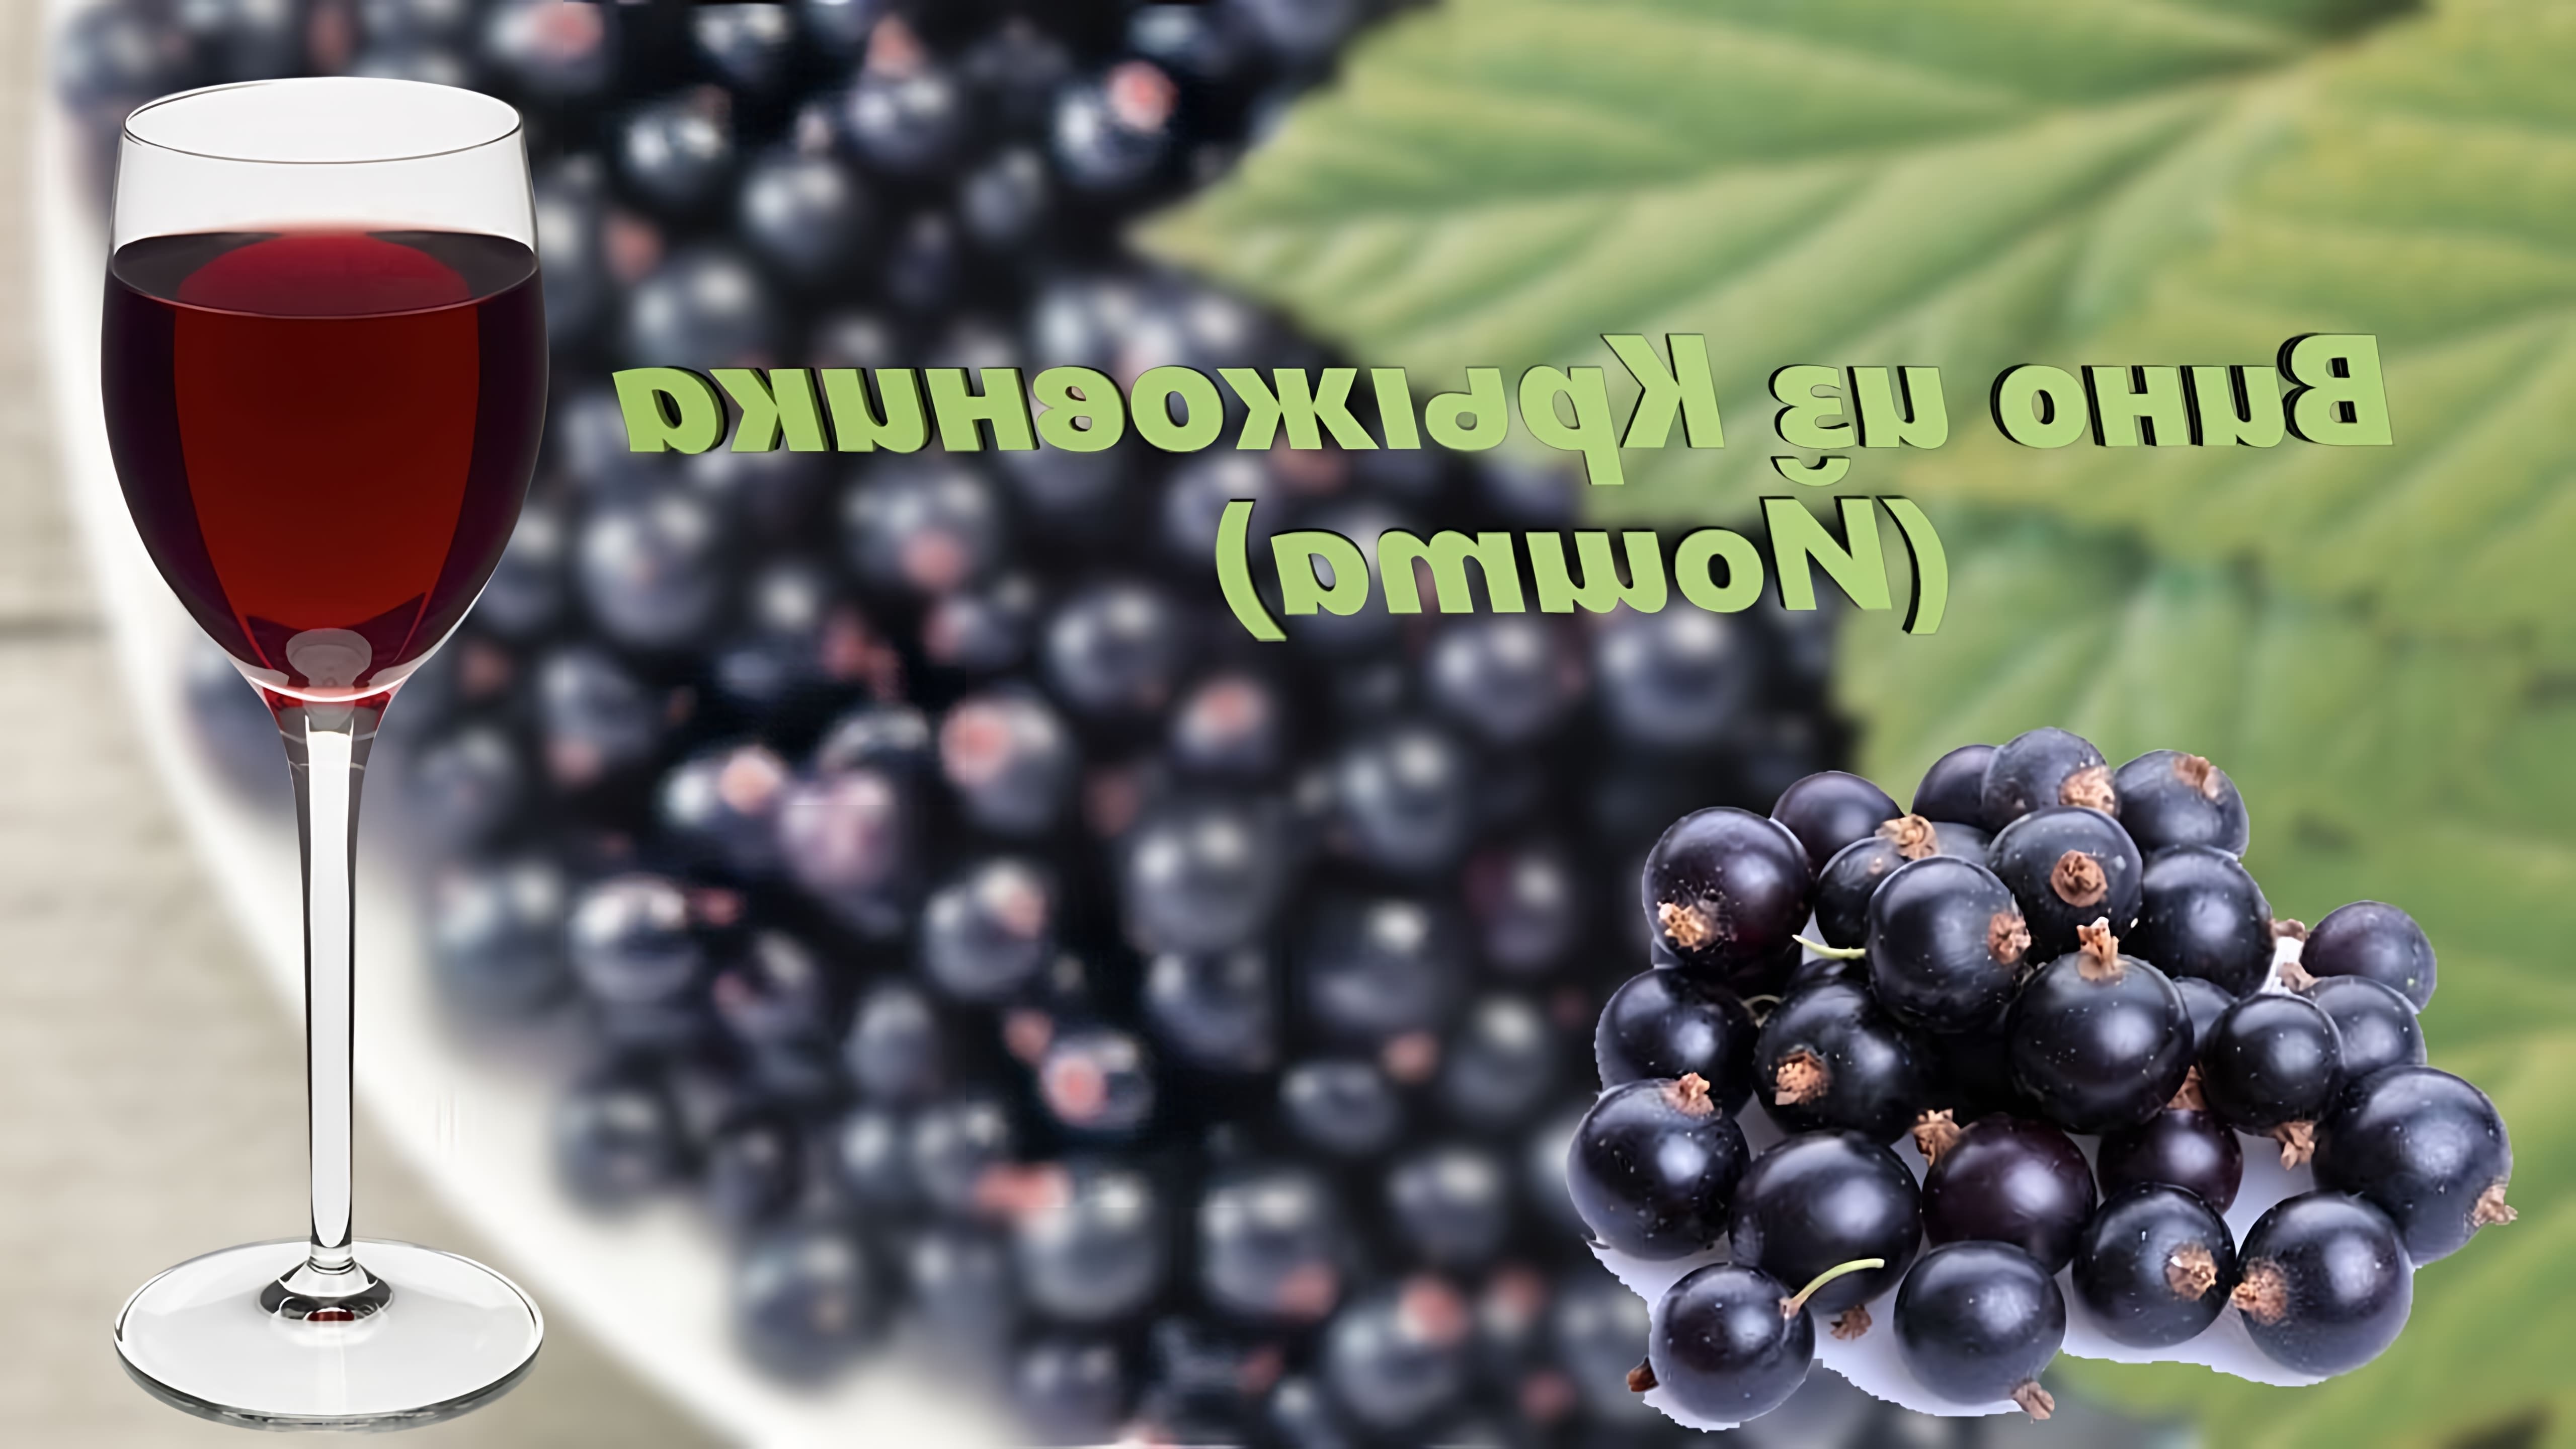 В этом видео Максим Лисовский показывает, как приготовить вино из ягод йошты (гибрид крыжовника и смородины)